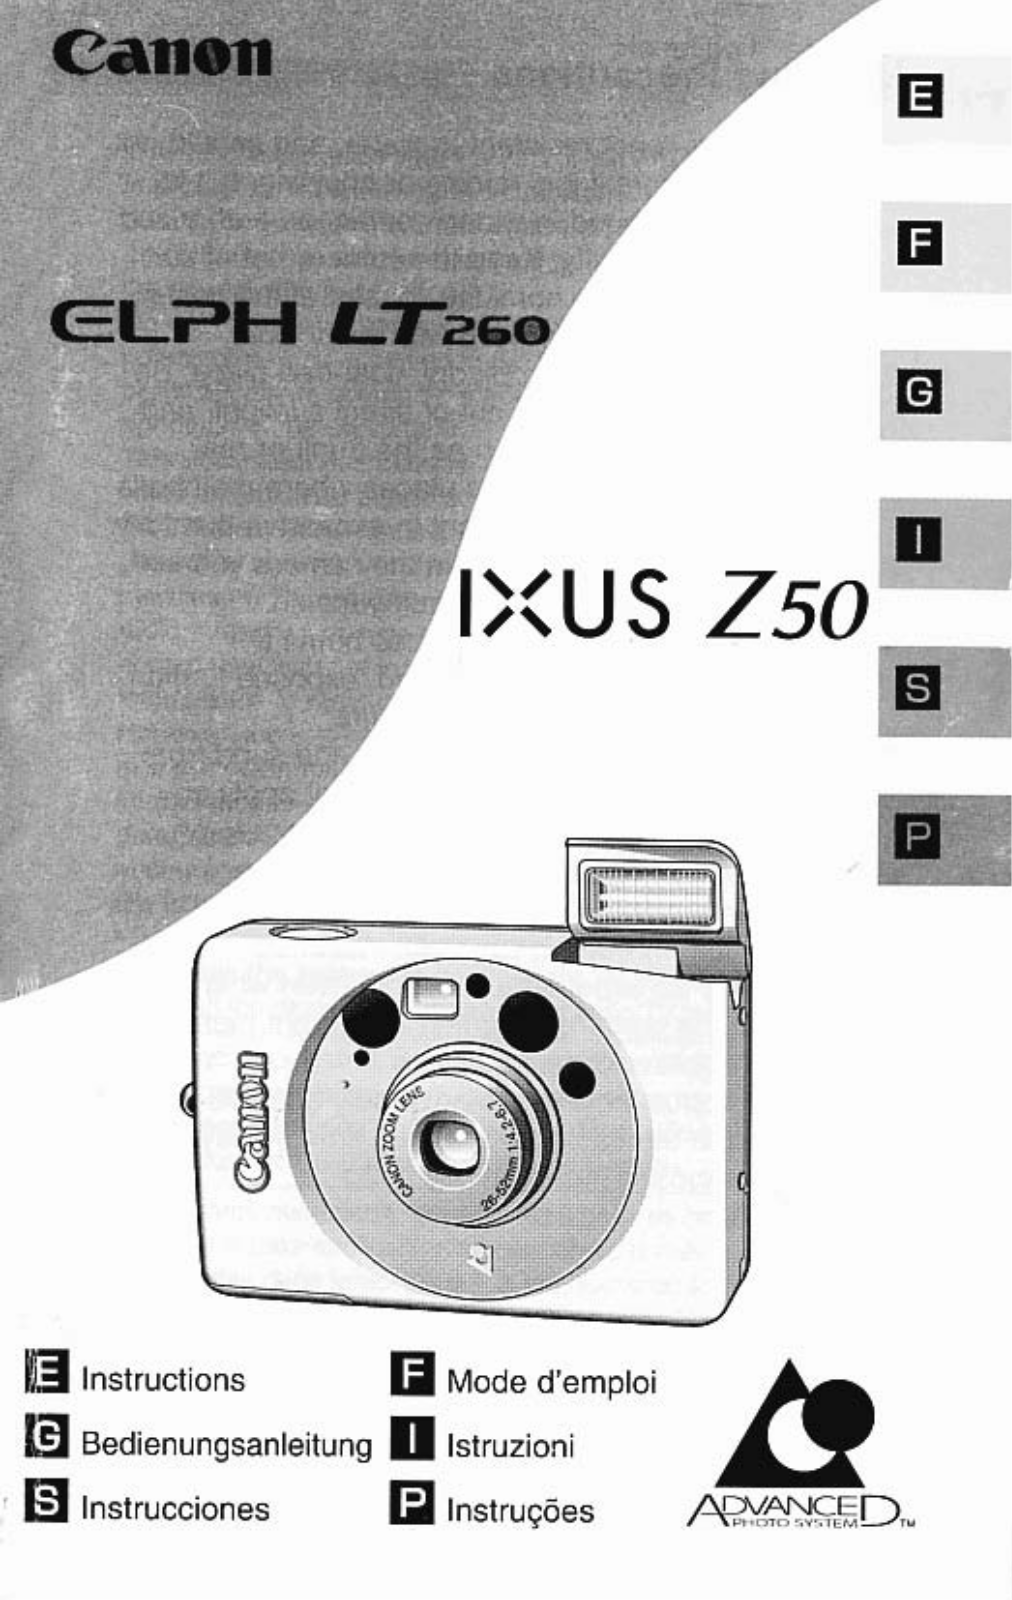 Canon ELPH LT 260 User Manual